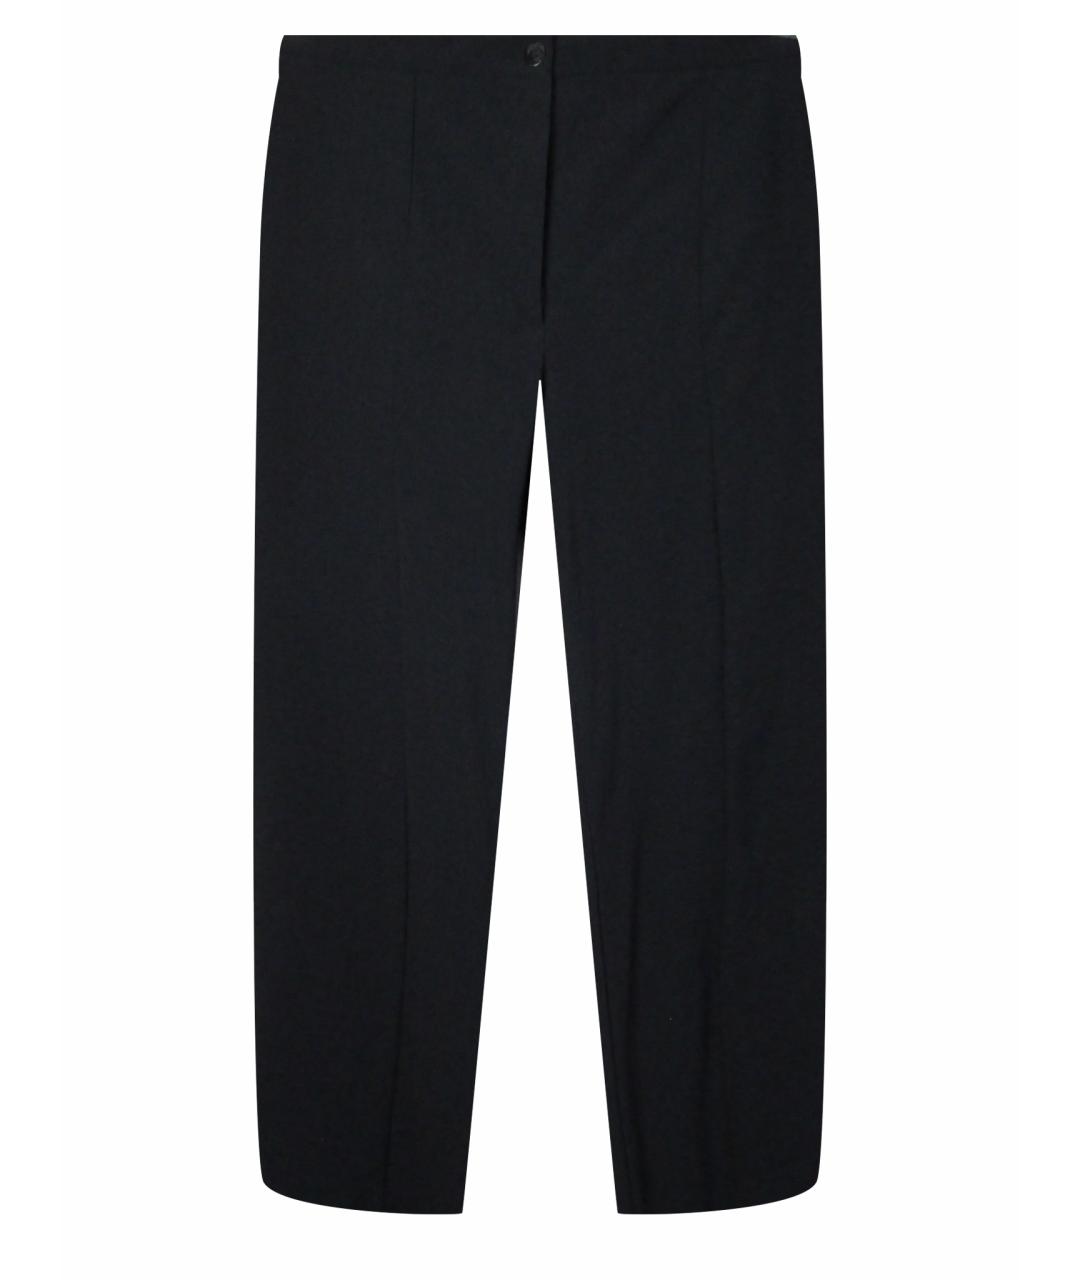 MARITHE FRANCOIS GIRBAUD Черные полиамидовые брюки узкие, фото 1